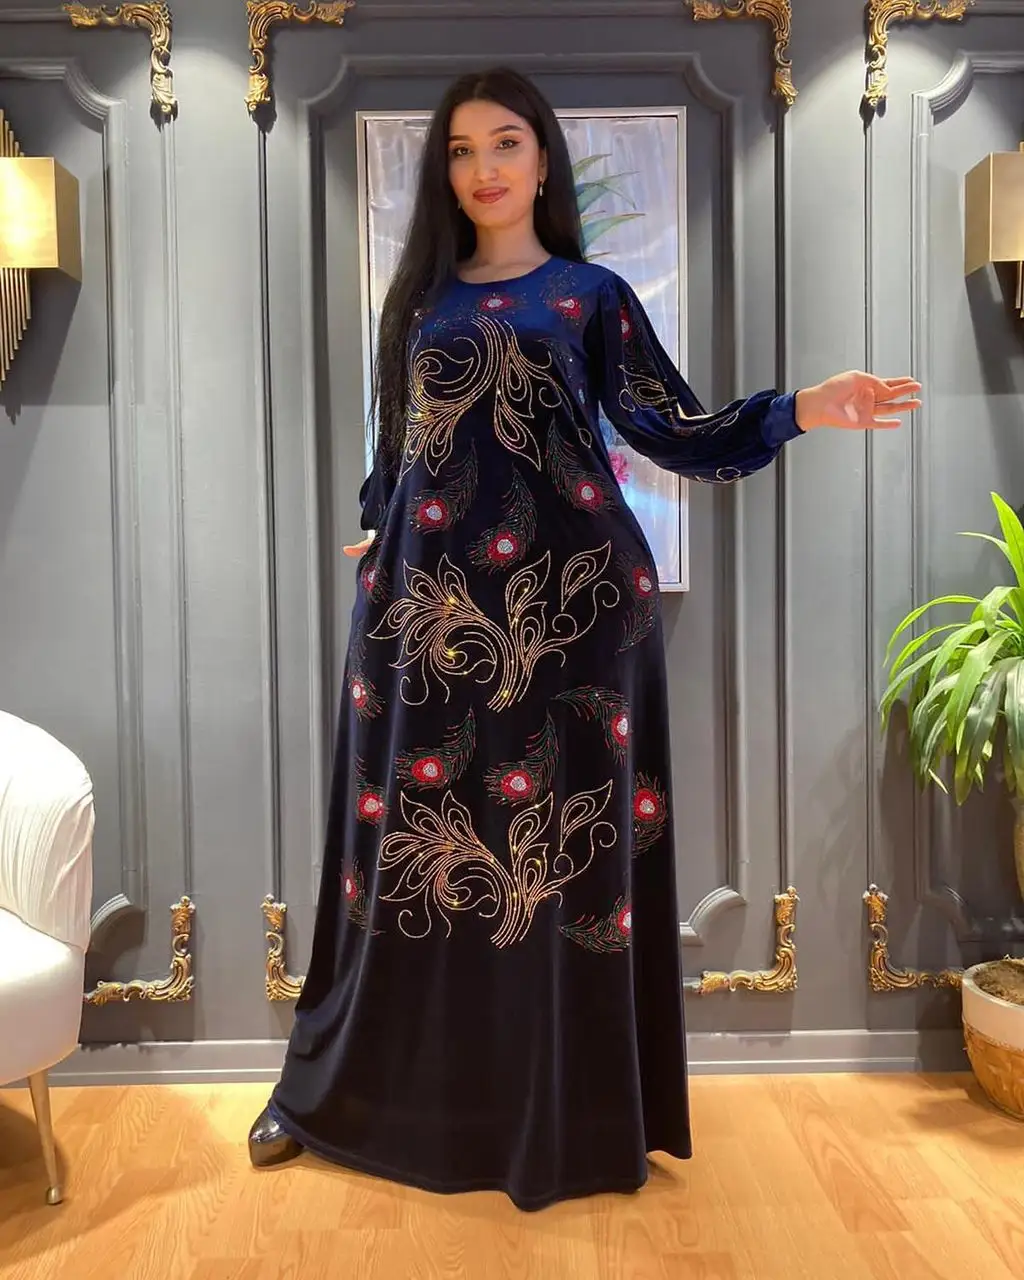 Бальное платье Среднего Востока Дубая, африканские стразы, павлиньи перья, мозаичная ткань, роскошная мусульманская одежда, кафтан, абайя